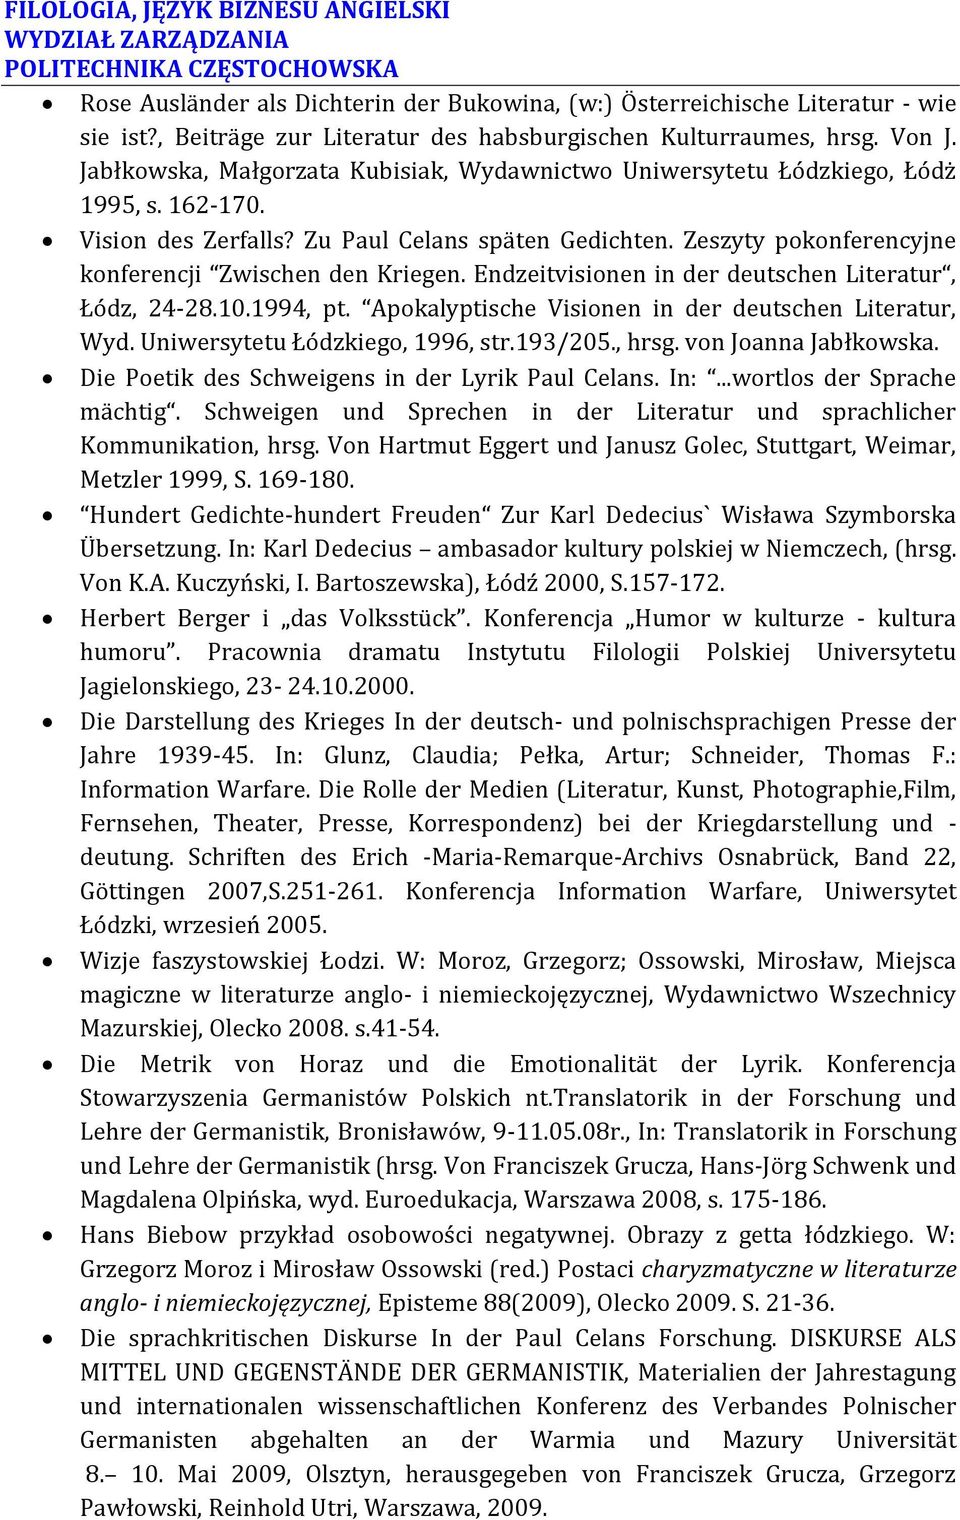 Zeszyty pokonferencyjne konferencji Zwischen den Kriegen. Endzeitvisionen in der deutschen Literatur, Łódz, 24-28.10.1994, pt. Apokalyptische Visionen in der deutschen Literatur, Wyd.